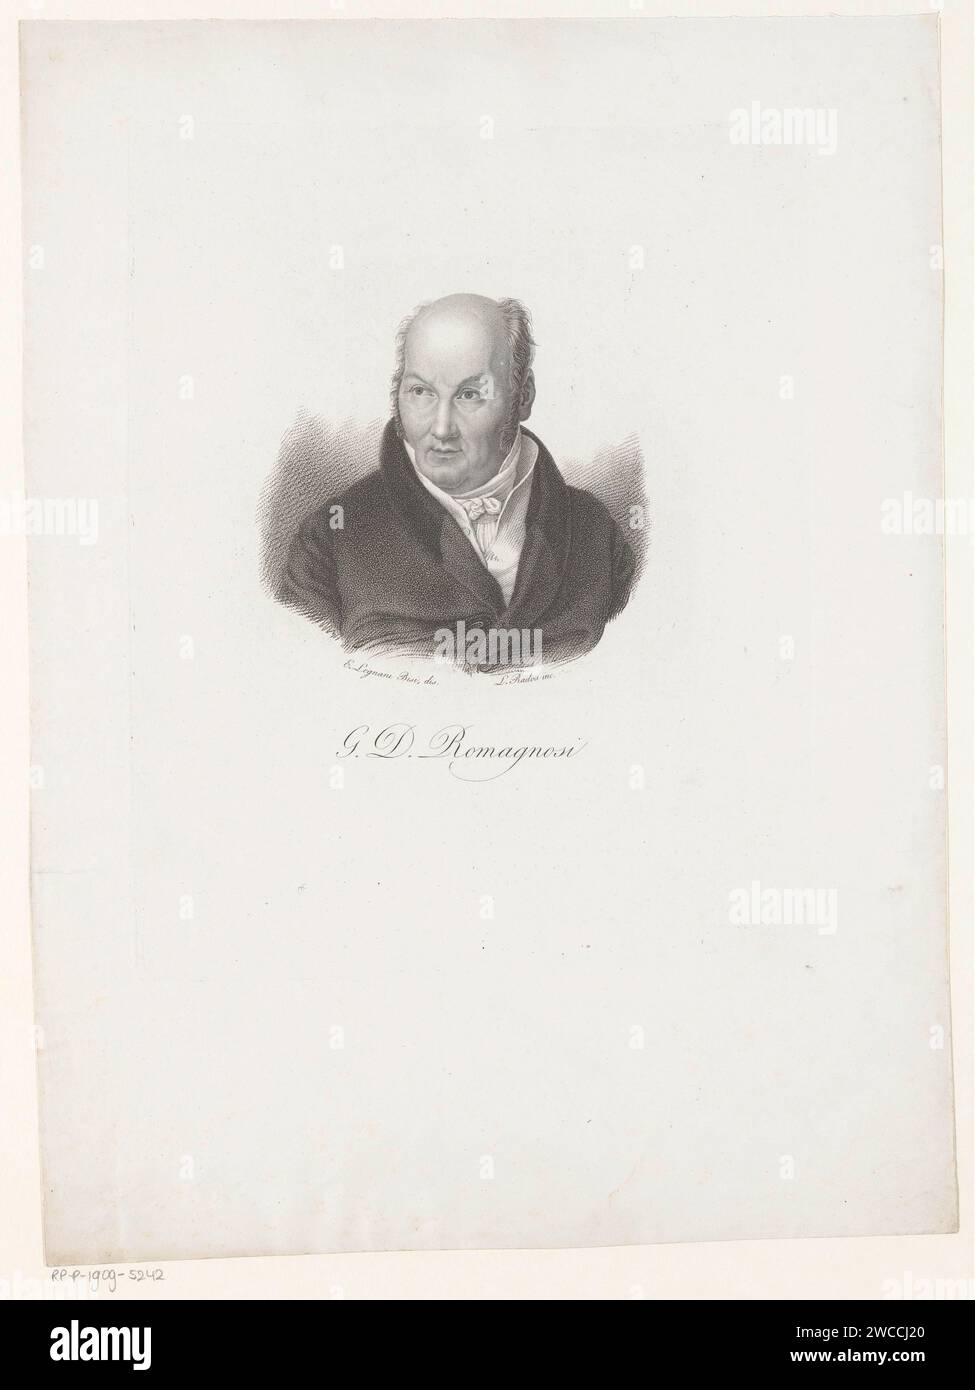 Portret Van Gian Domenico Romagnosi, Luigi Rados, nach Ernesta Bisi, 1783–1840 Druck Italien Papier graviert historische Personen Stockfoto